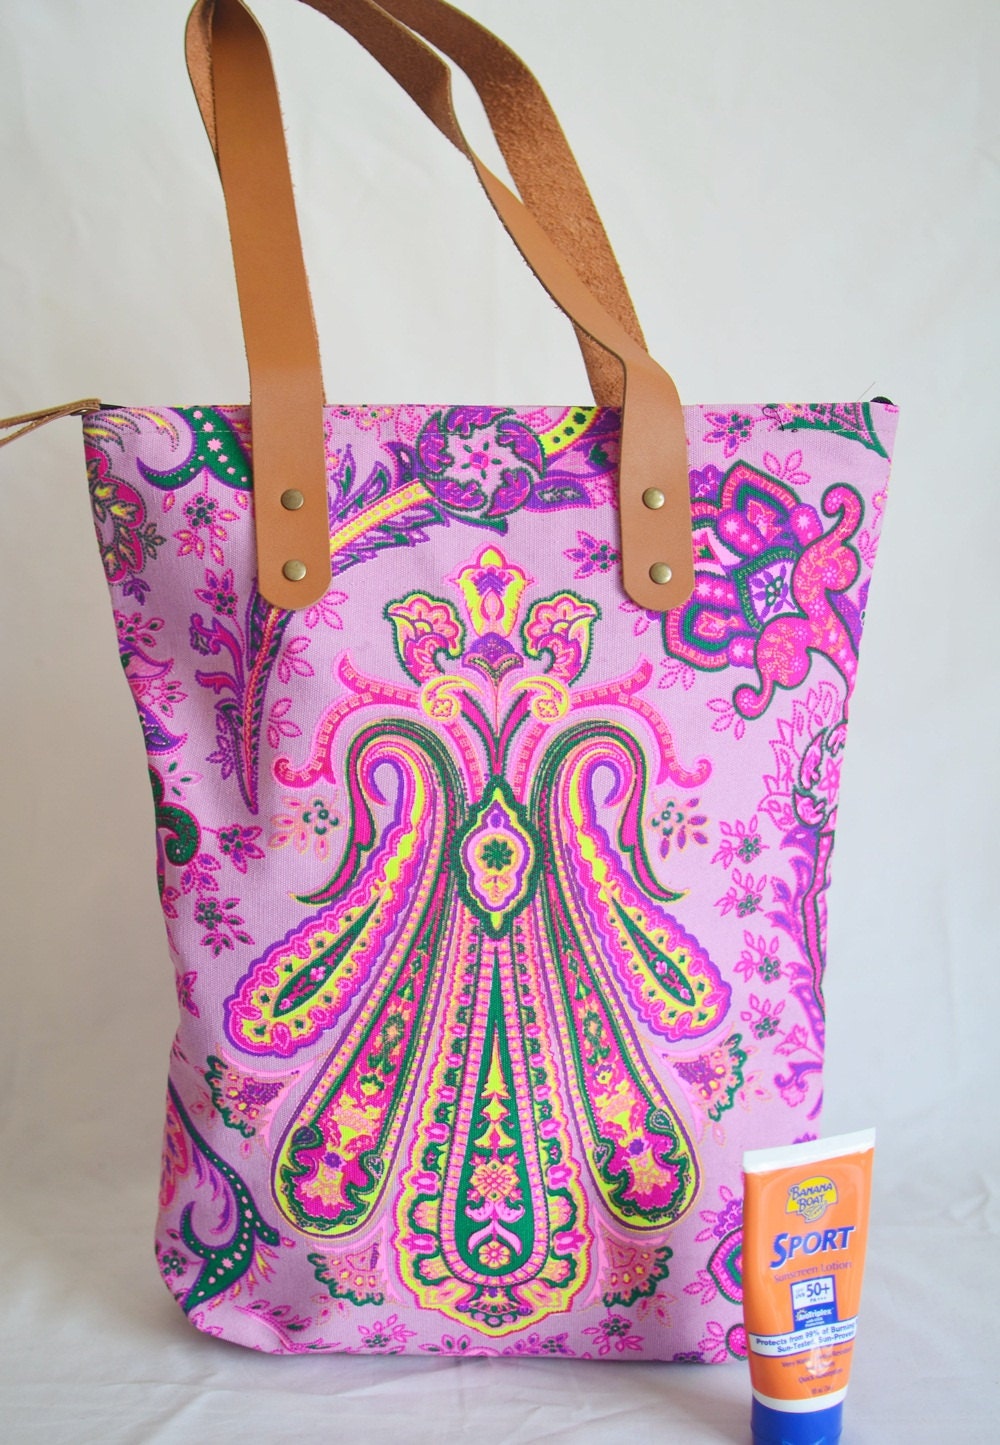 P-Coachella Mandala Beach Bag / Christmas Gift Tote bag Canvas | Etsy